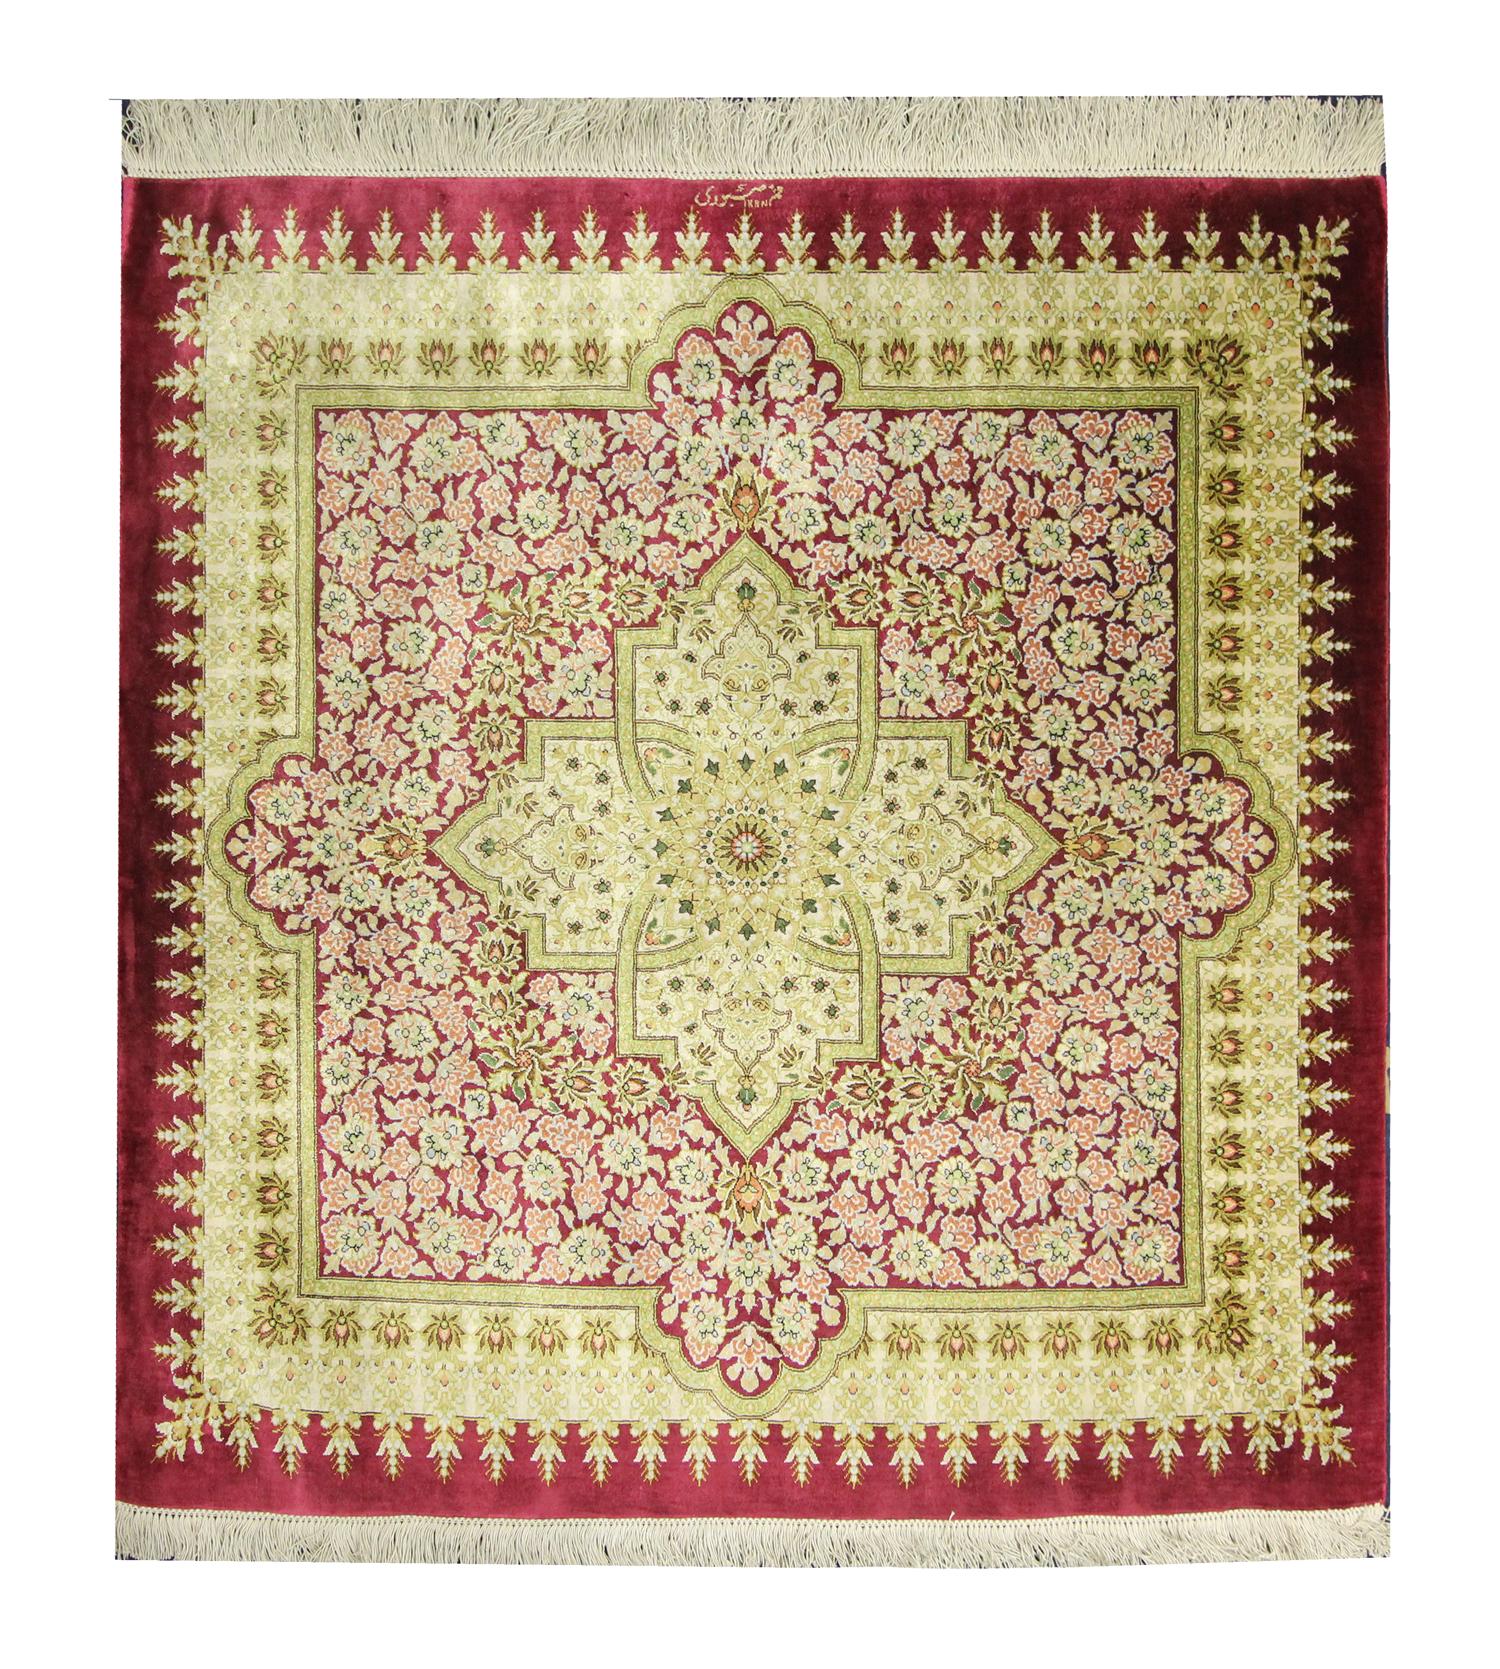 Ce luxueux tapis carré a été tissé à la main en Azerbaïdjan et présente un grand motif de médaillon. Elle présente un motif floral très décoratif, un élégant médaillon et une bordure répétée en couches avec des accents beiges, roses et crème sur un